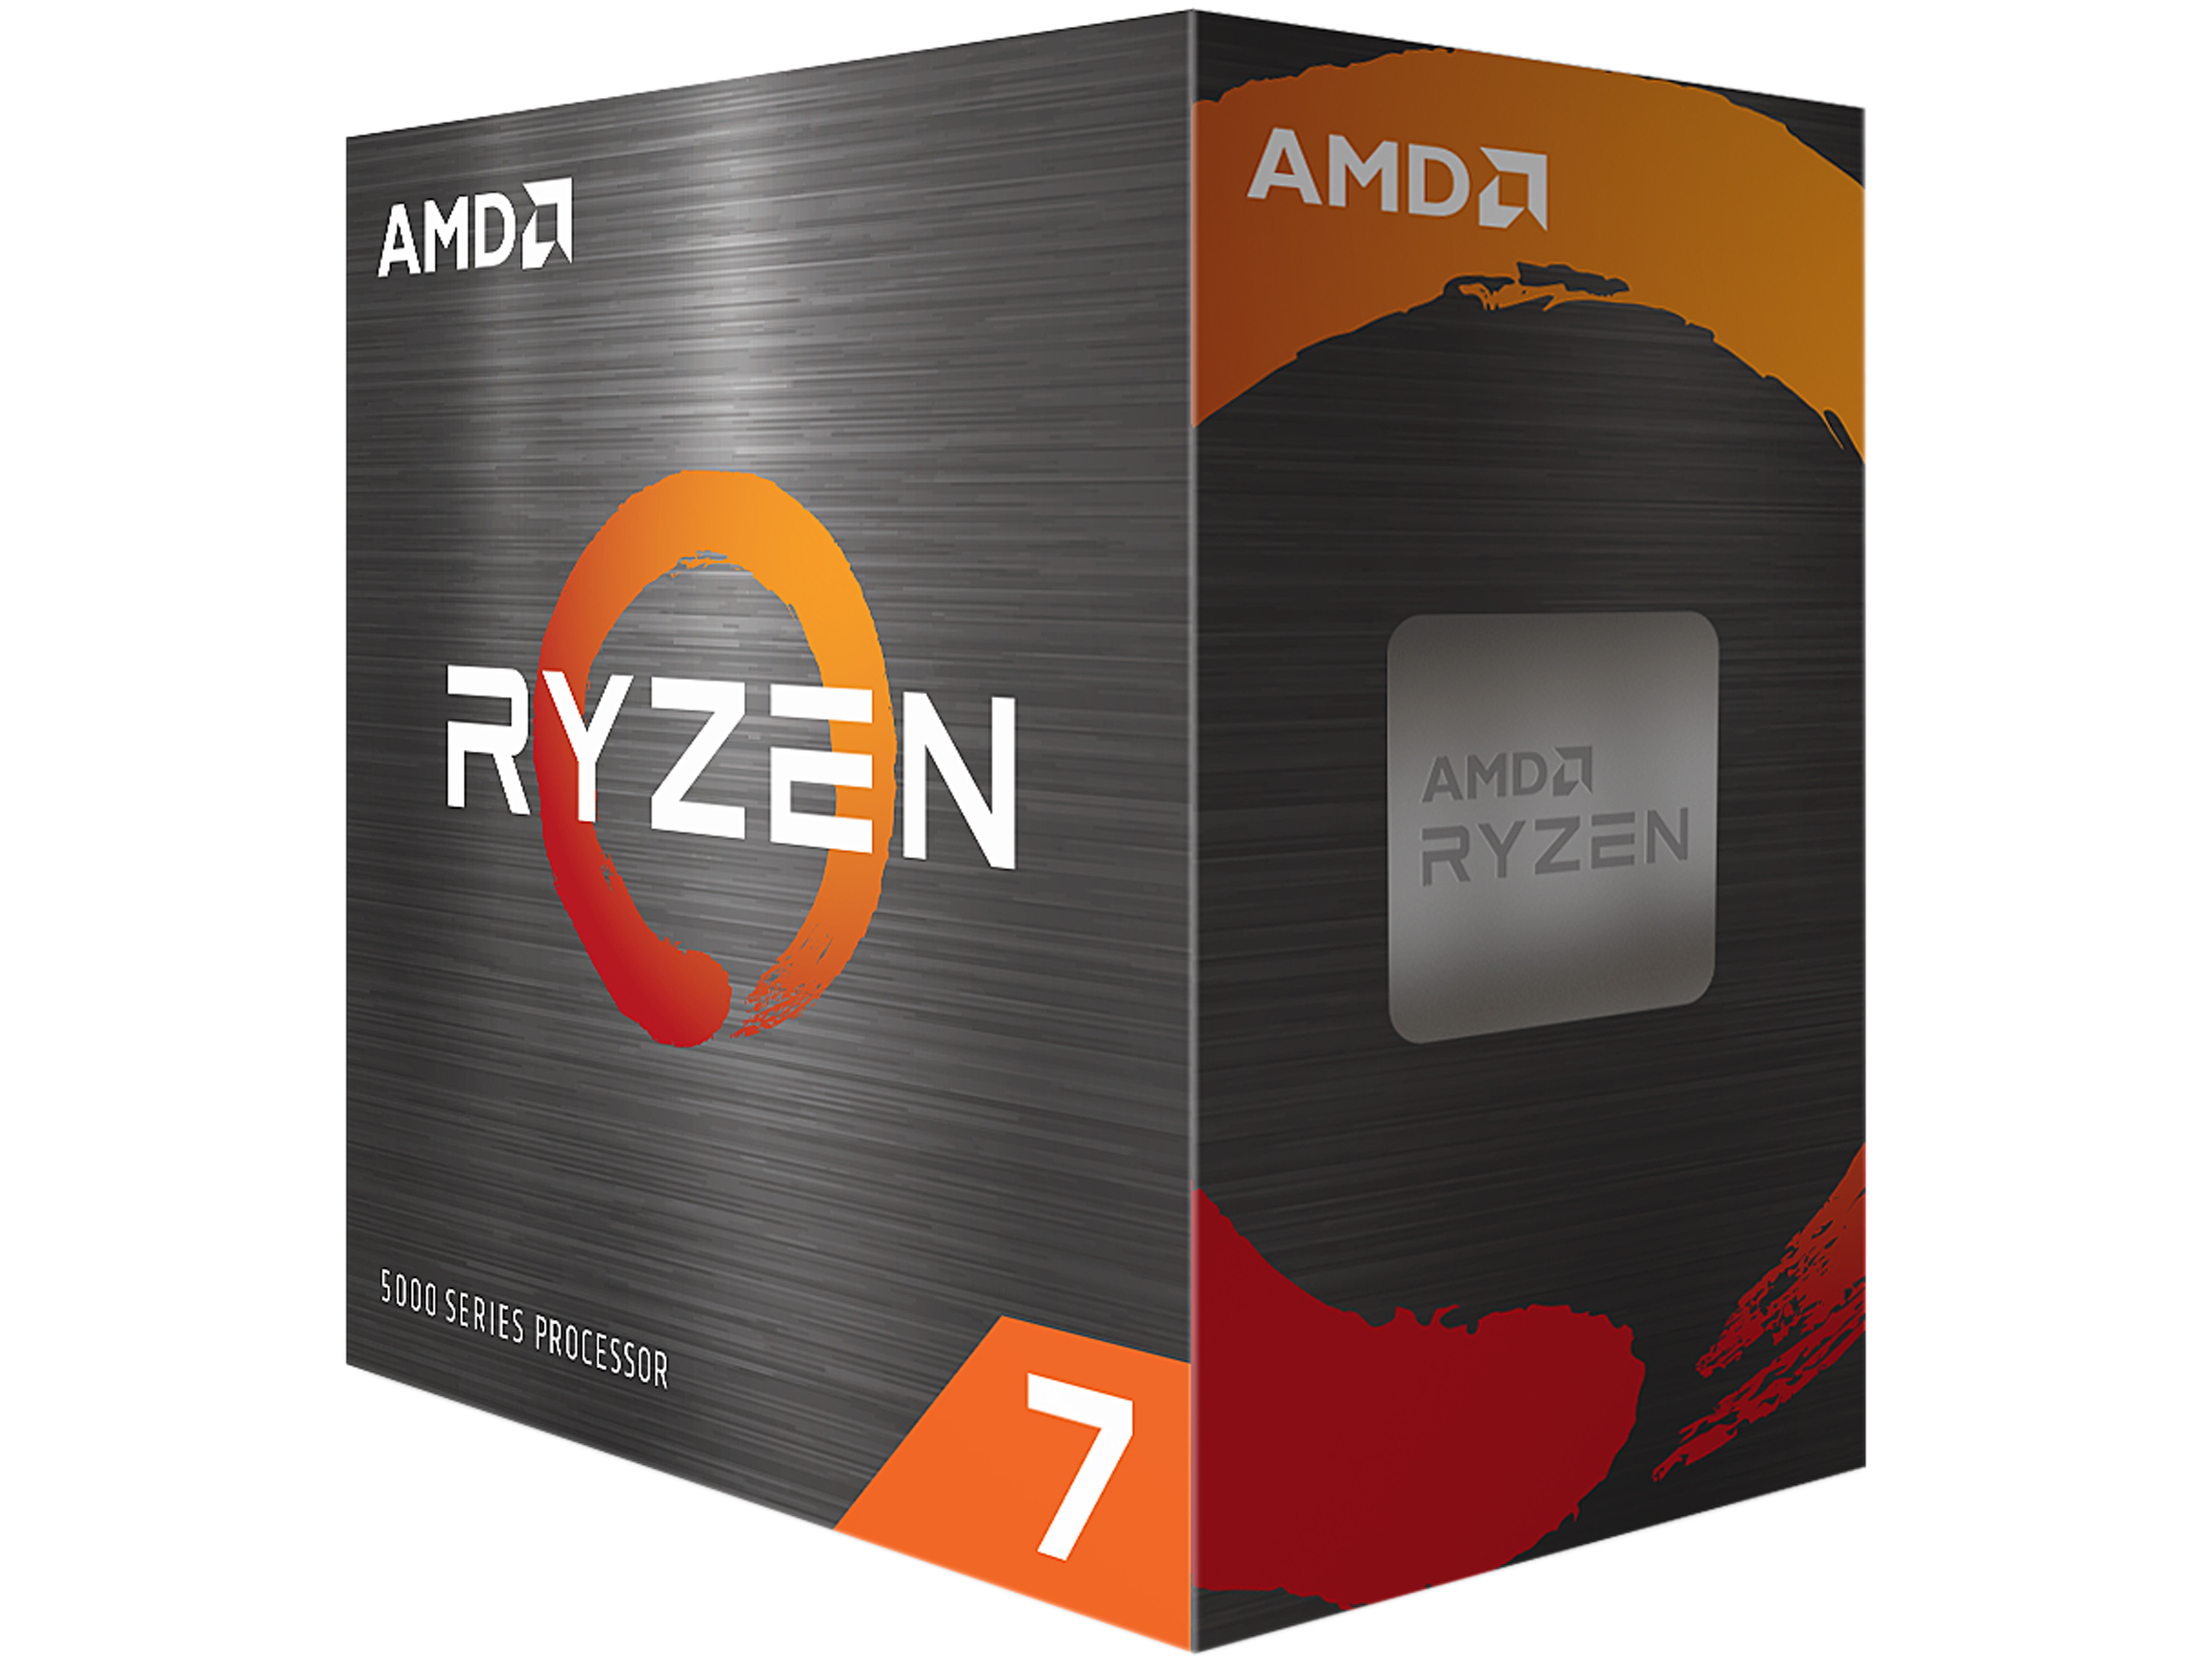 AMD Ryzen 7 5800X 8-core, 16-Thread Unlocked Desktop Processor $229